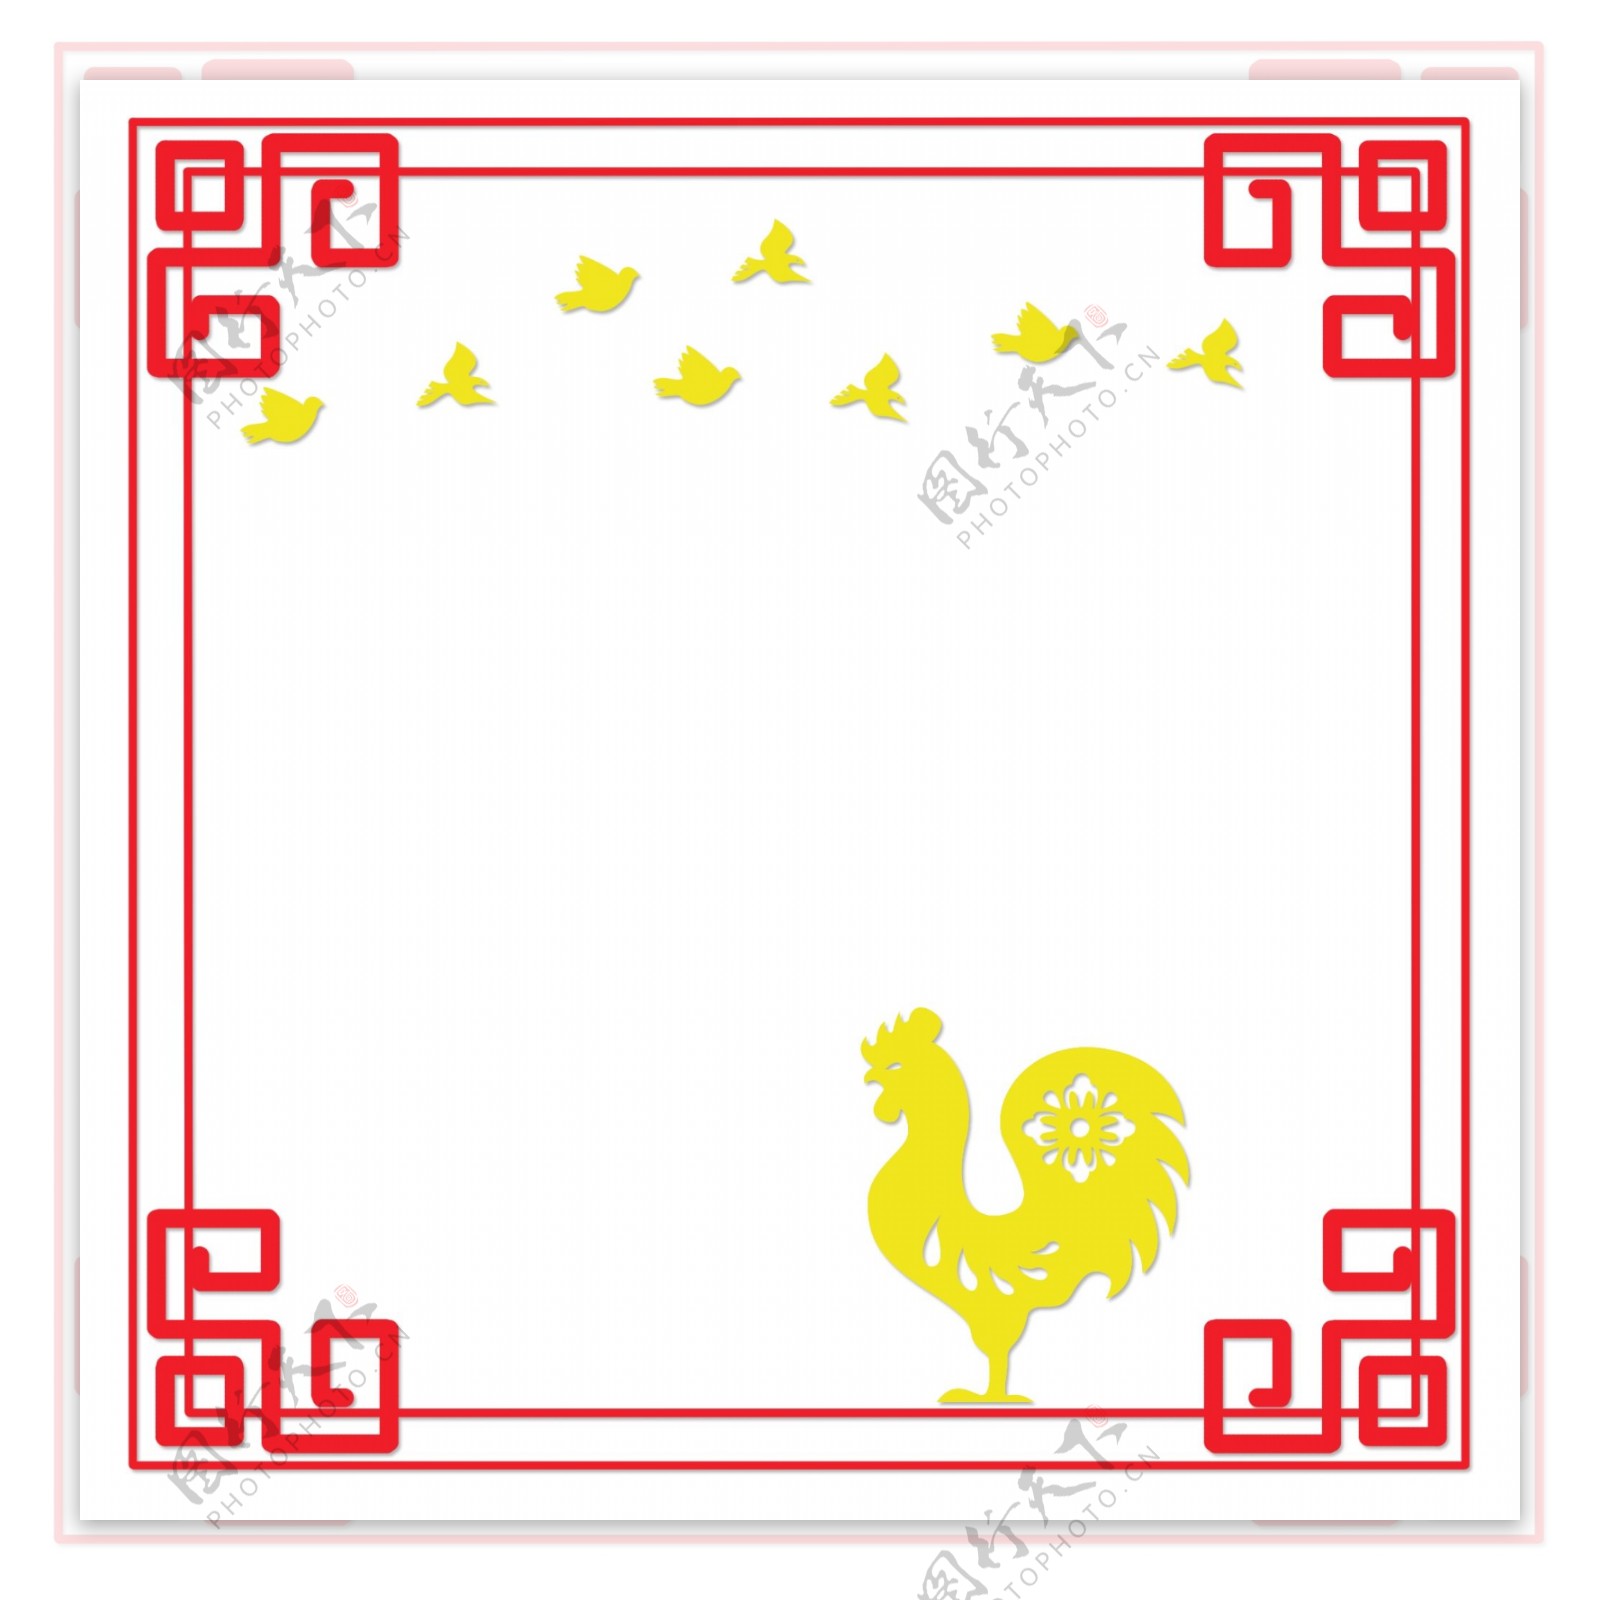 中国风古典风格扁平风格边框素材矢量图十二生肖